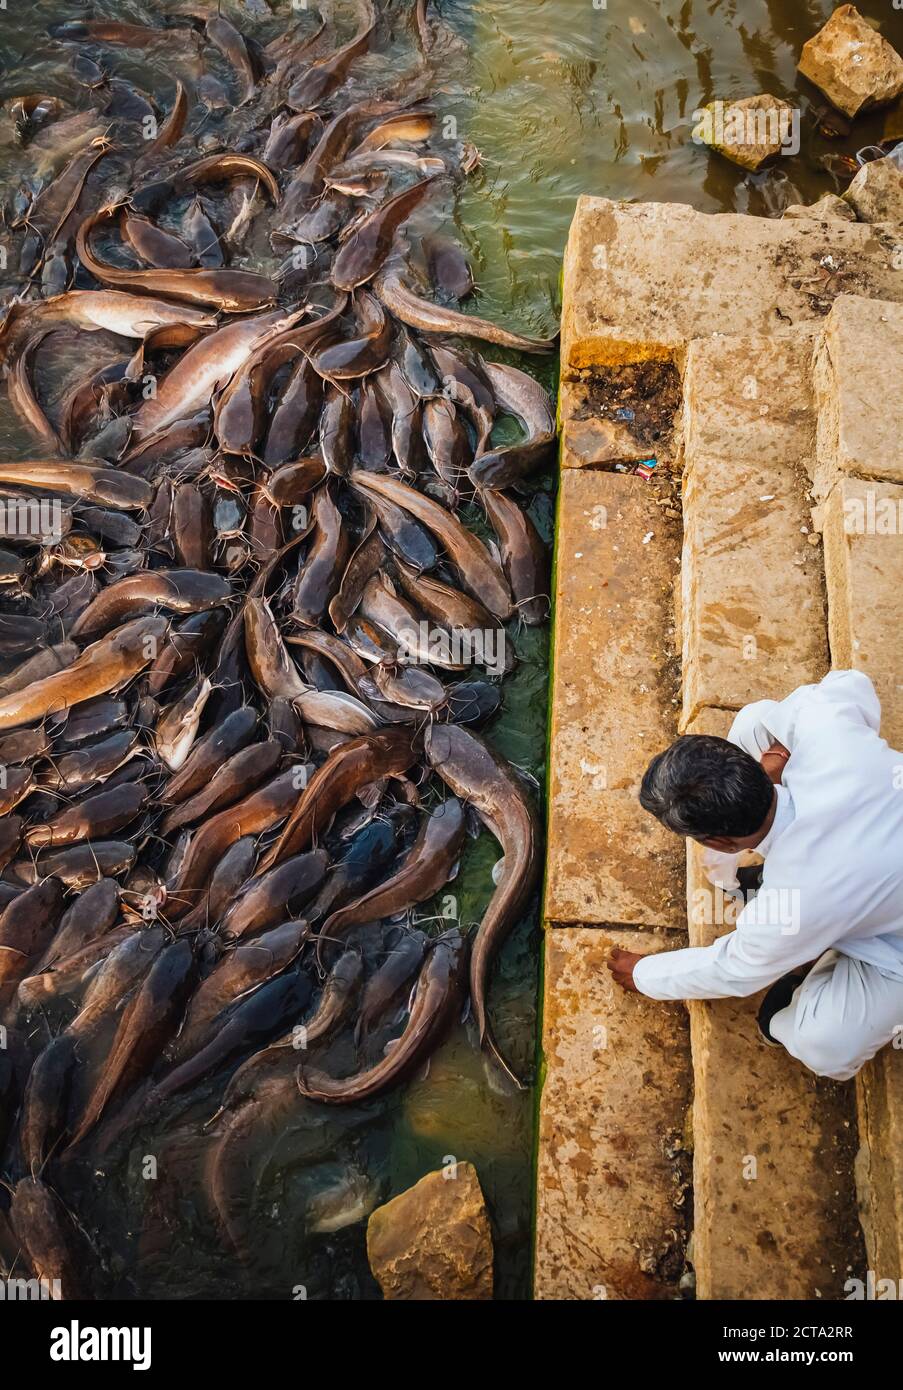 L'Inde, Jaisalmer, l'abondance des poissons-chats dans le lac Gadisar Banque D'Images